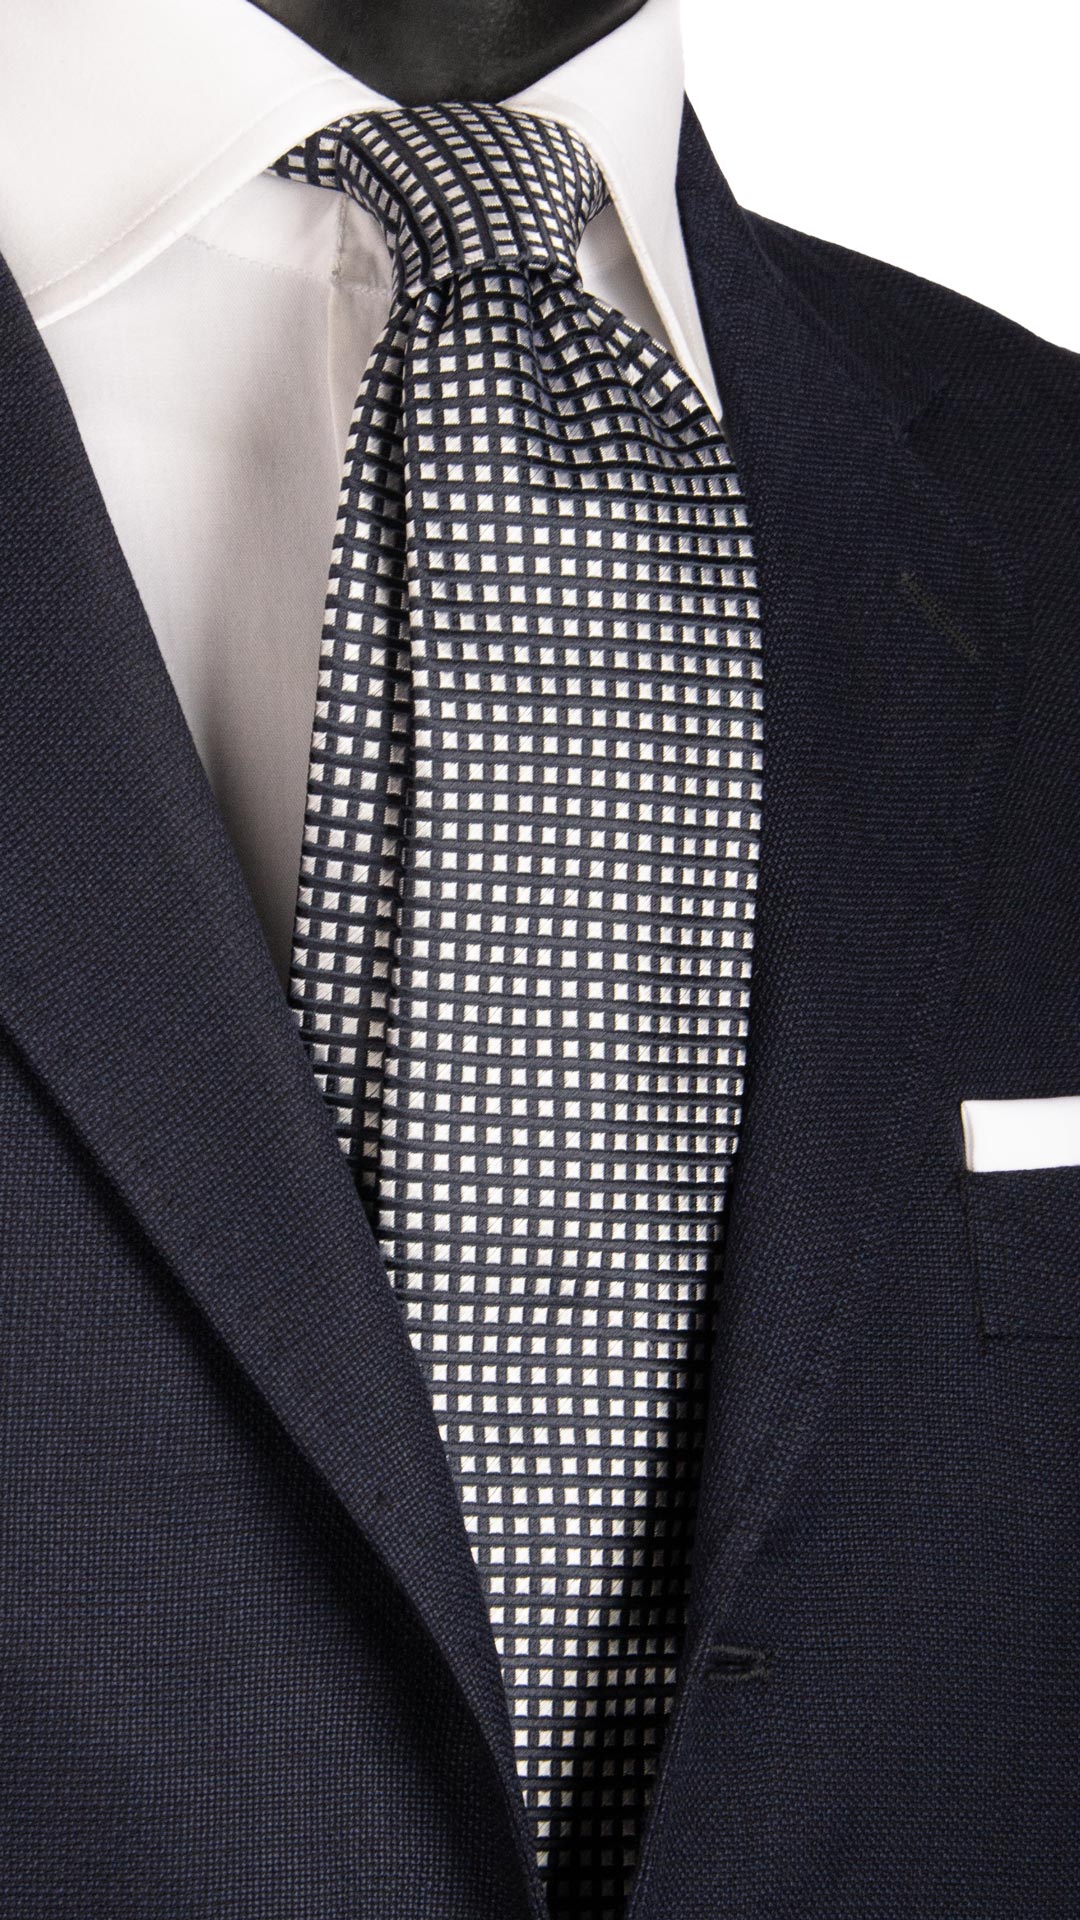 Cravatta da Cerimonia di Seta Fantasia Blu Grigio Argento CY6661 Made in Italy Graffeo Cravatte